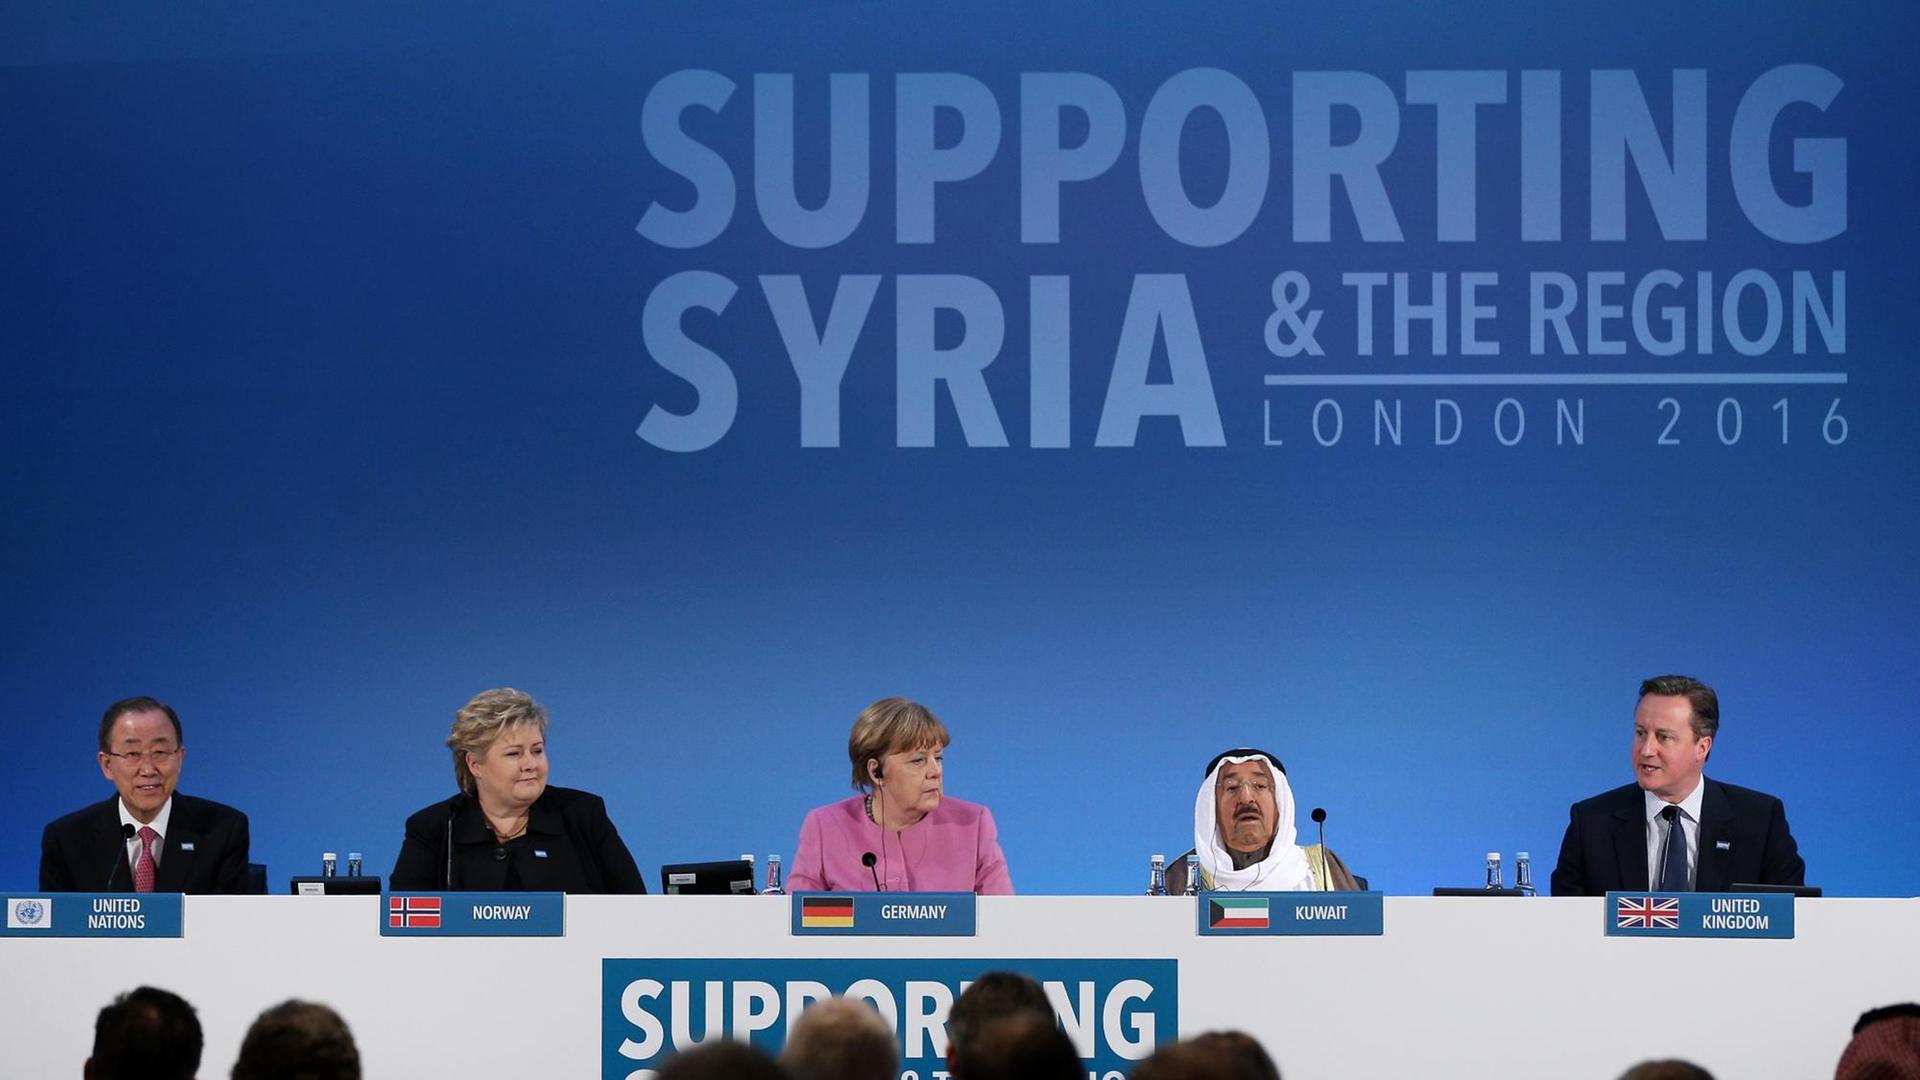 UN-Generalsekretär Ban Ki Moon, die norwegische Ministerpräsidentin Erna Solberg, Bundeskanzlerin Angela Merkel, der Emir von Katar, Scheich Sabah al-Ahmad al-Sabah un der britische Premierminister David Cameron auf der Syrien-Geberkonferenz in London.